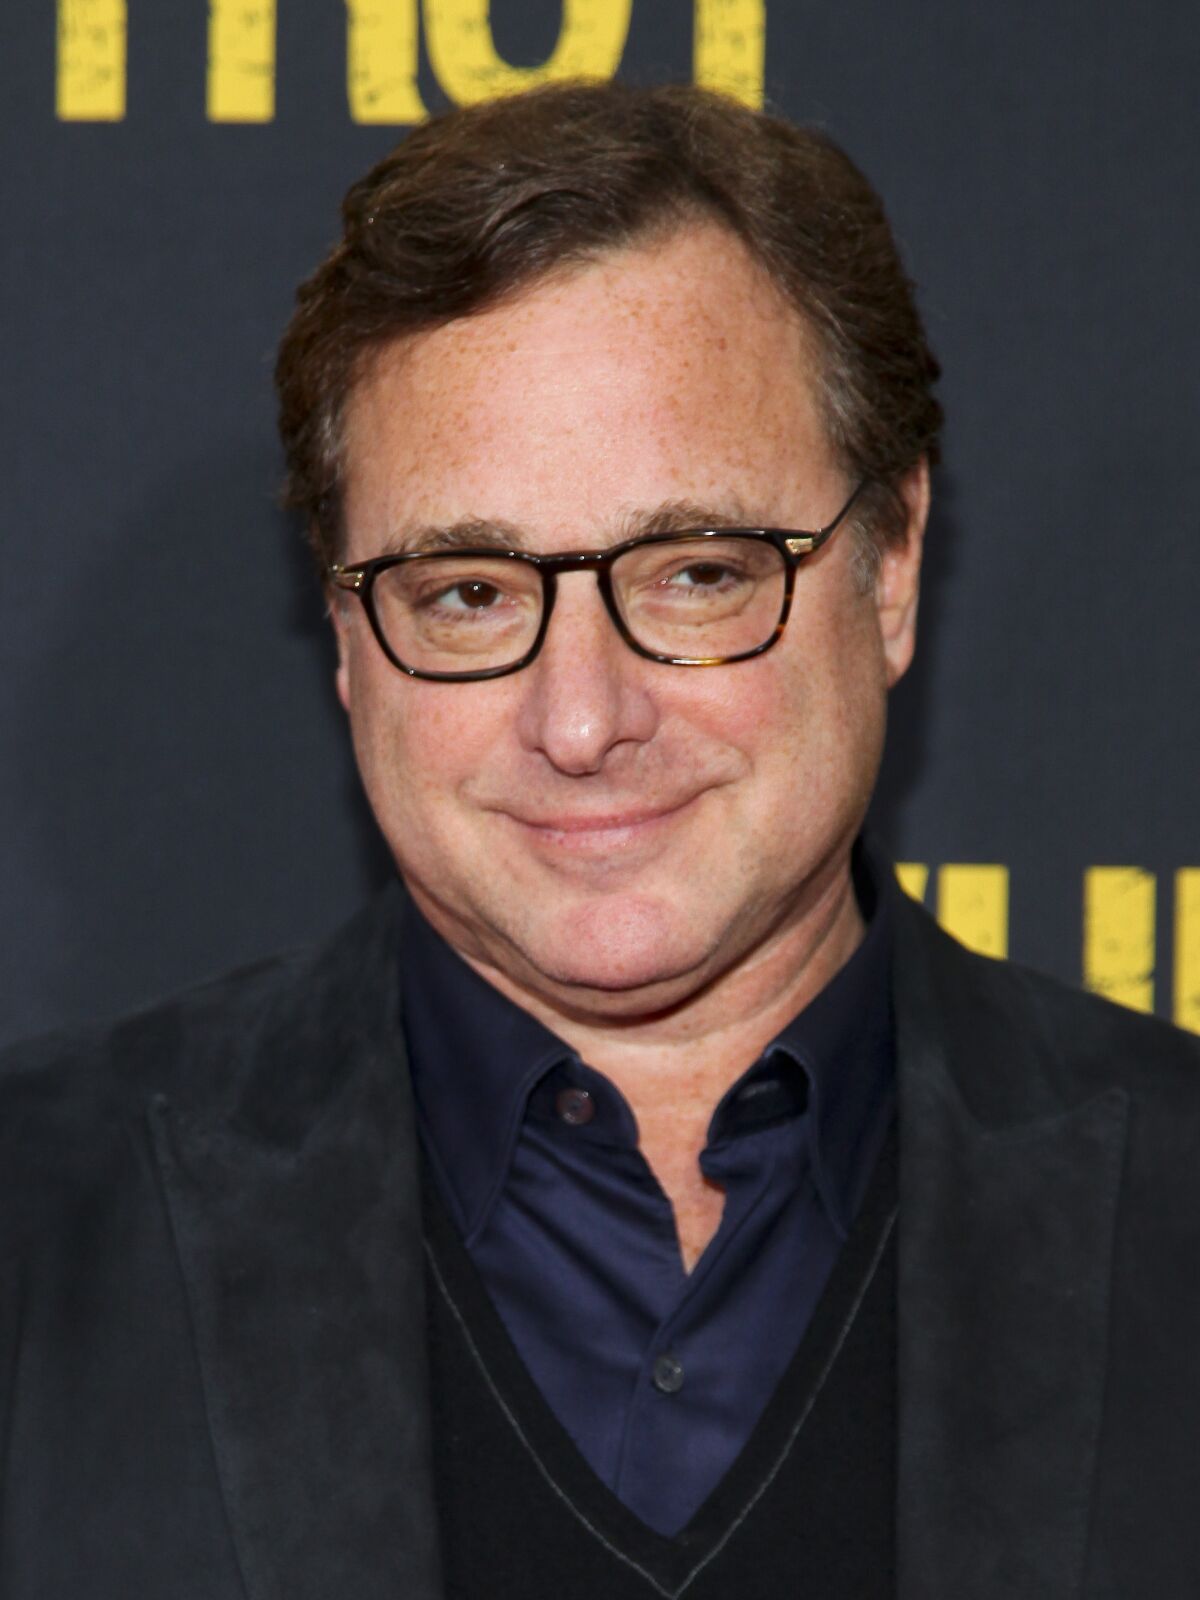 A man in eyeglasses wearing a dark suit.